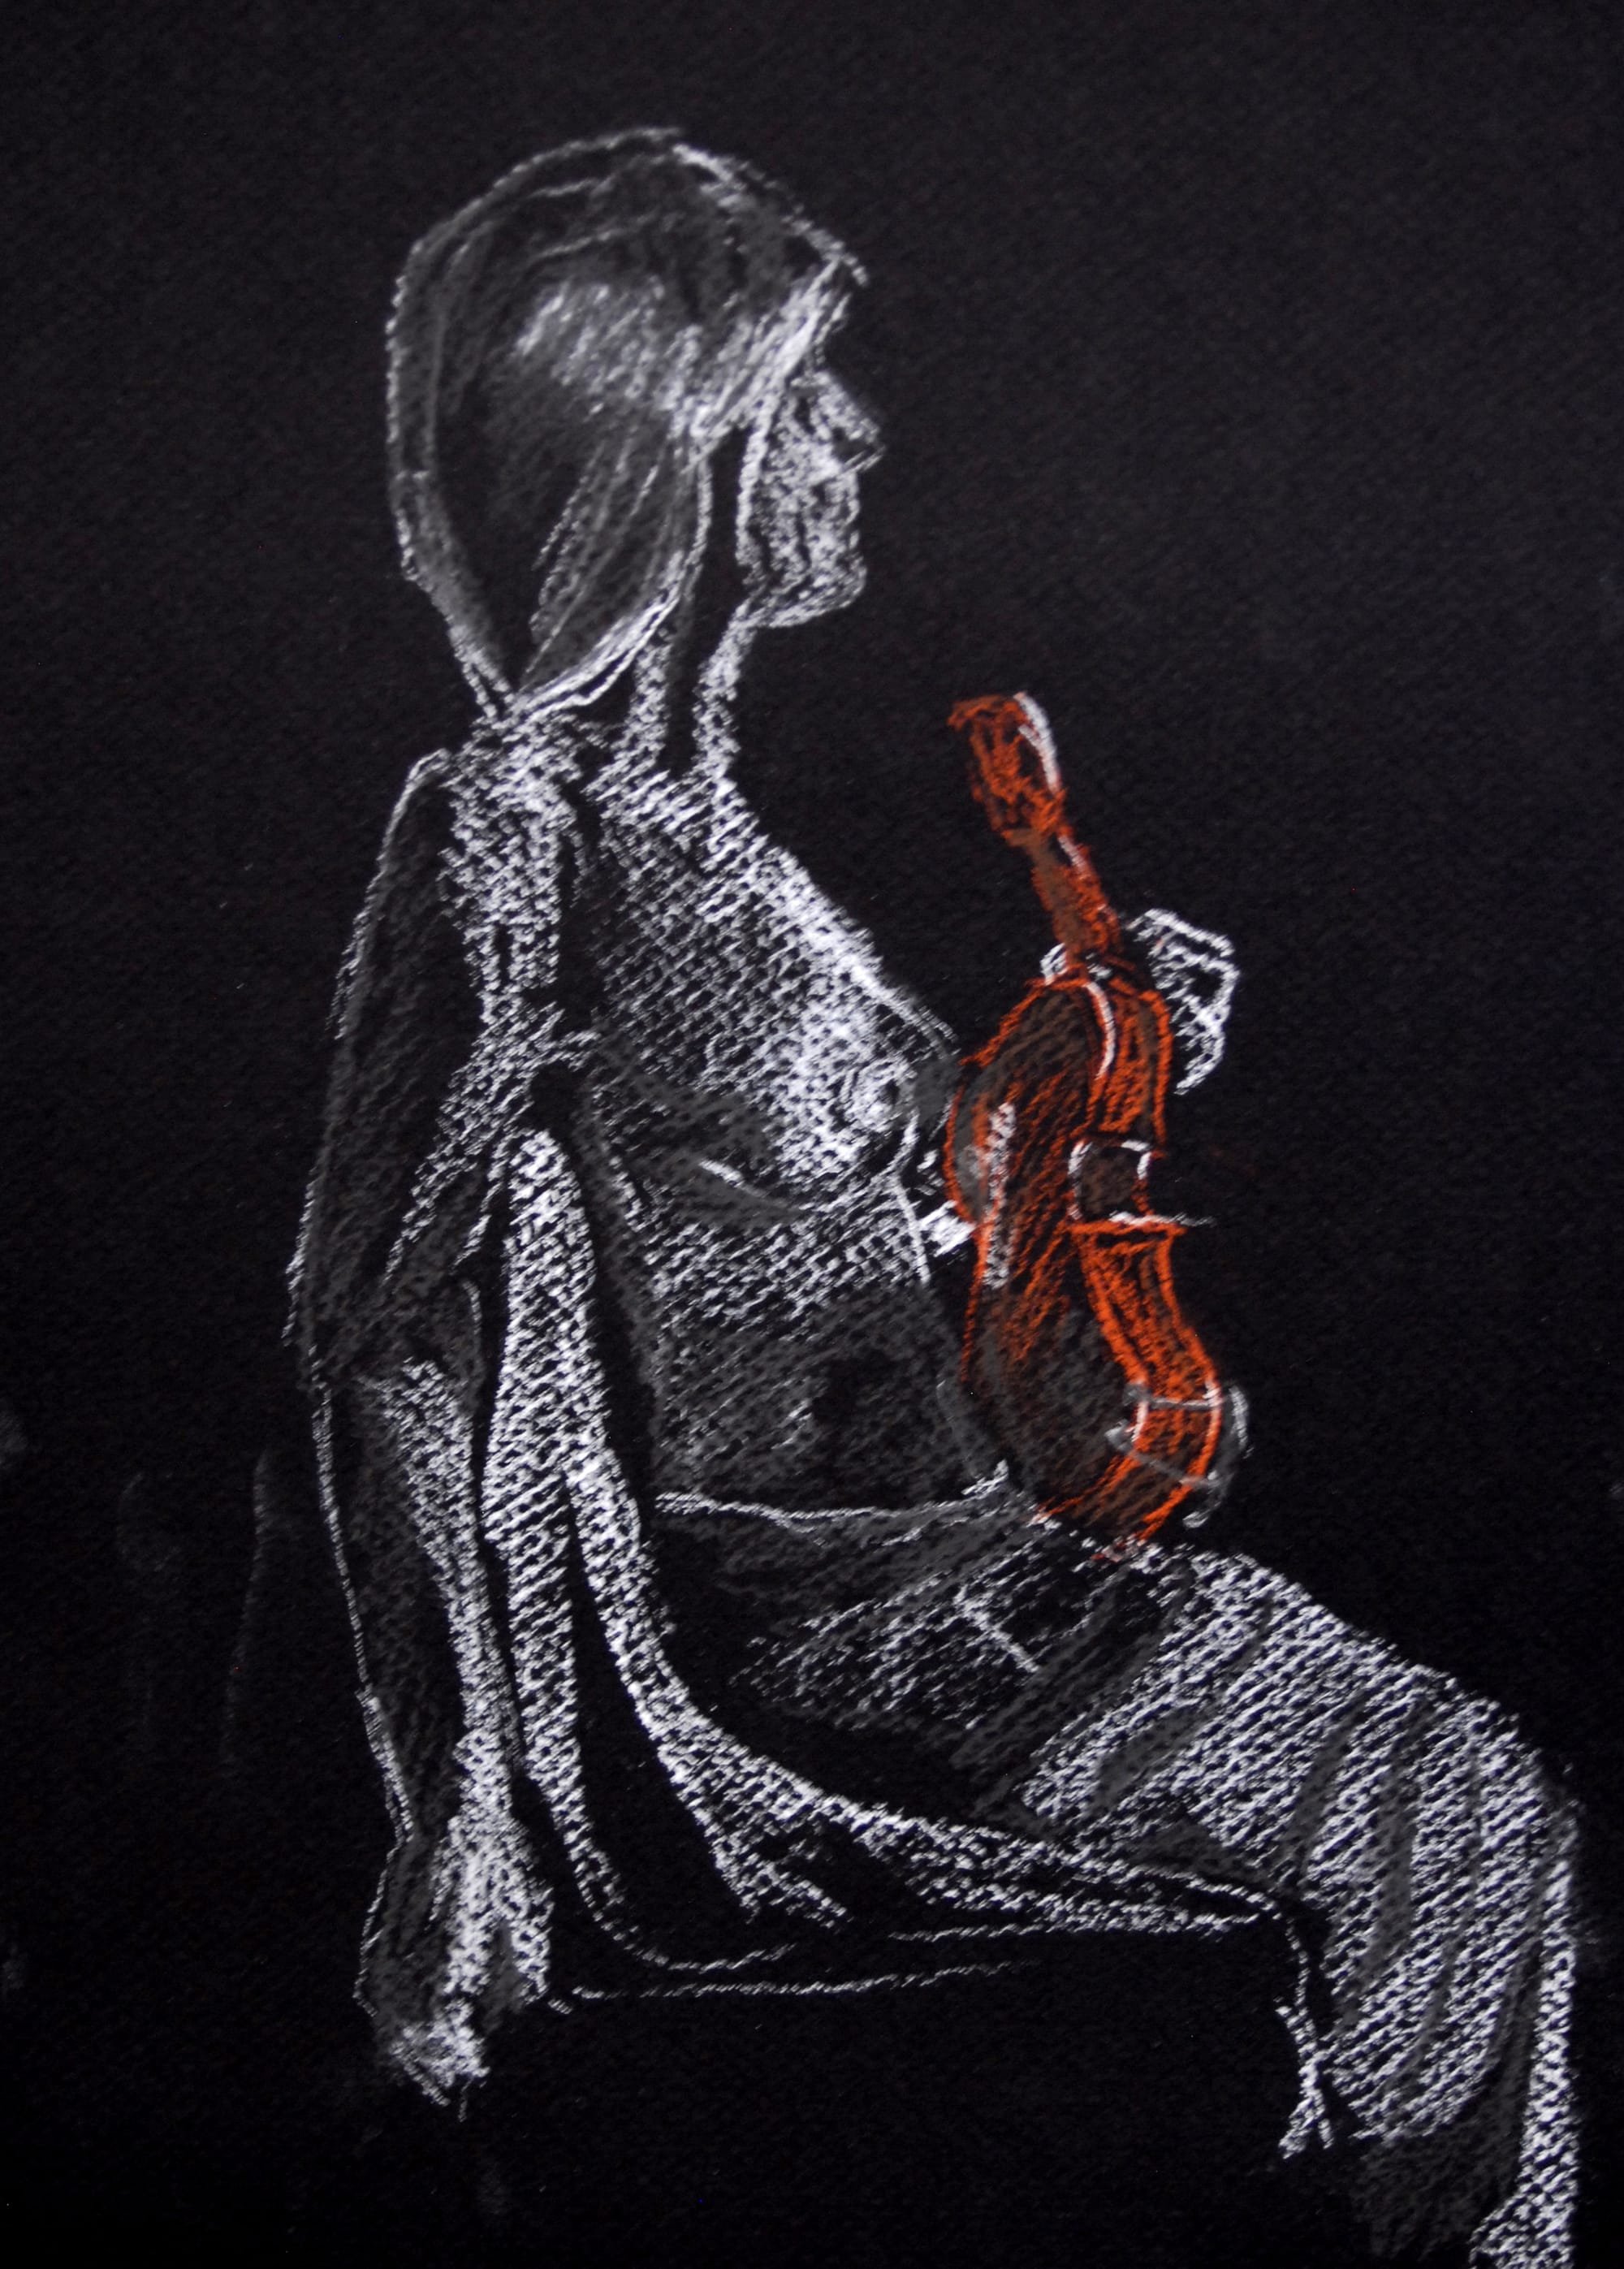 Femme au violon